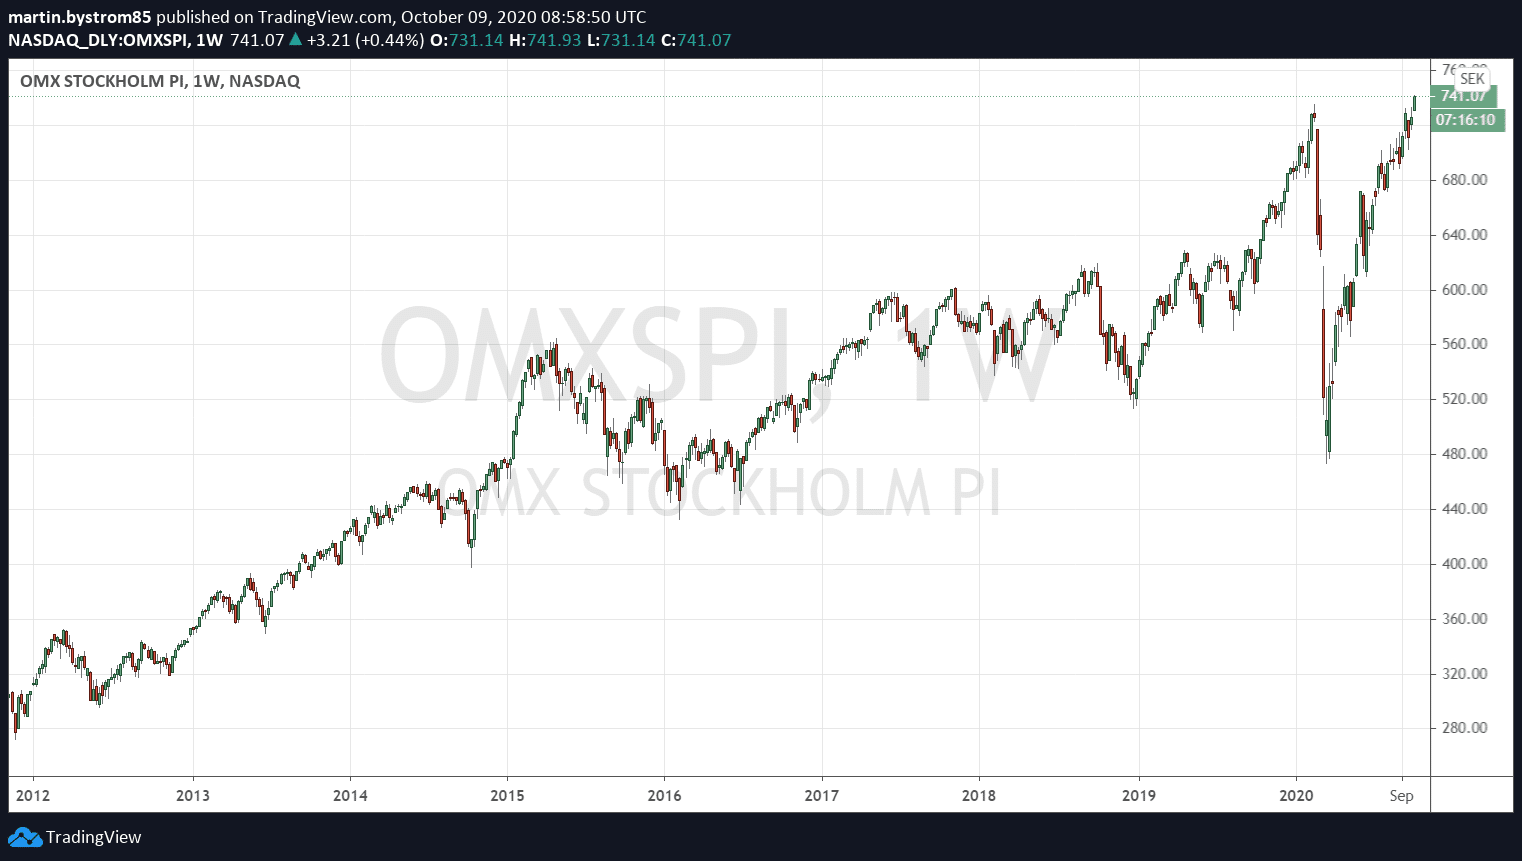 Historisk utveckling av OMXSPI, ett sammanvägt index av alla noterade bolag på Stockholmsbörsen.